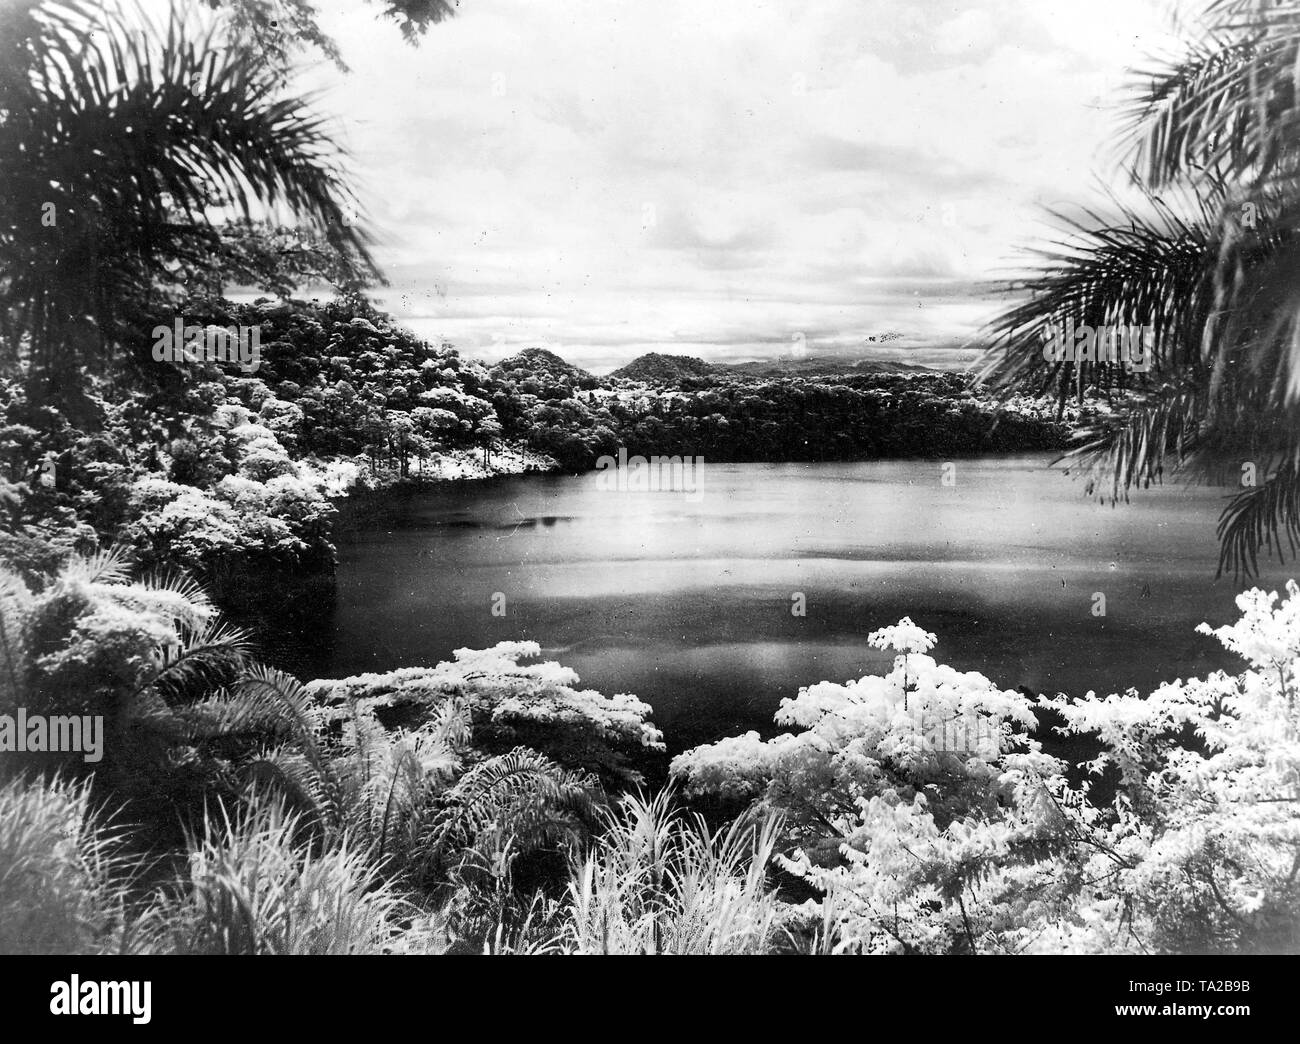 La Elefanten mare (lago di elefante) incorniciata da palme. Foto Stock